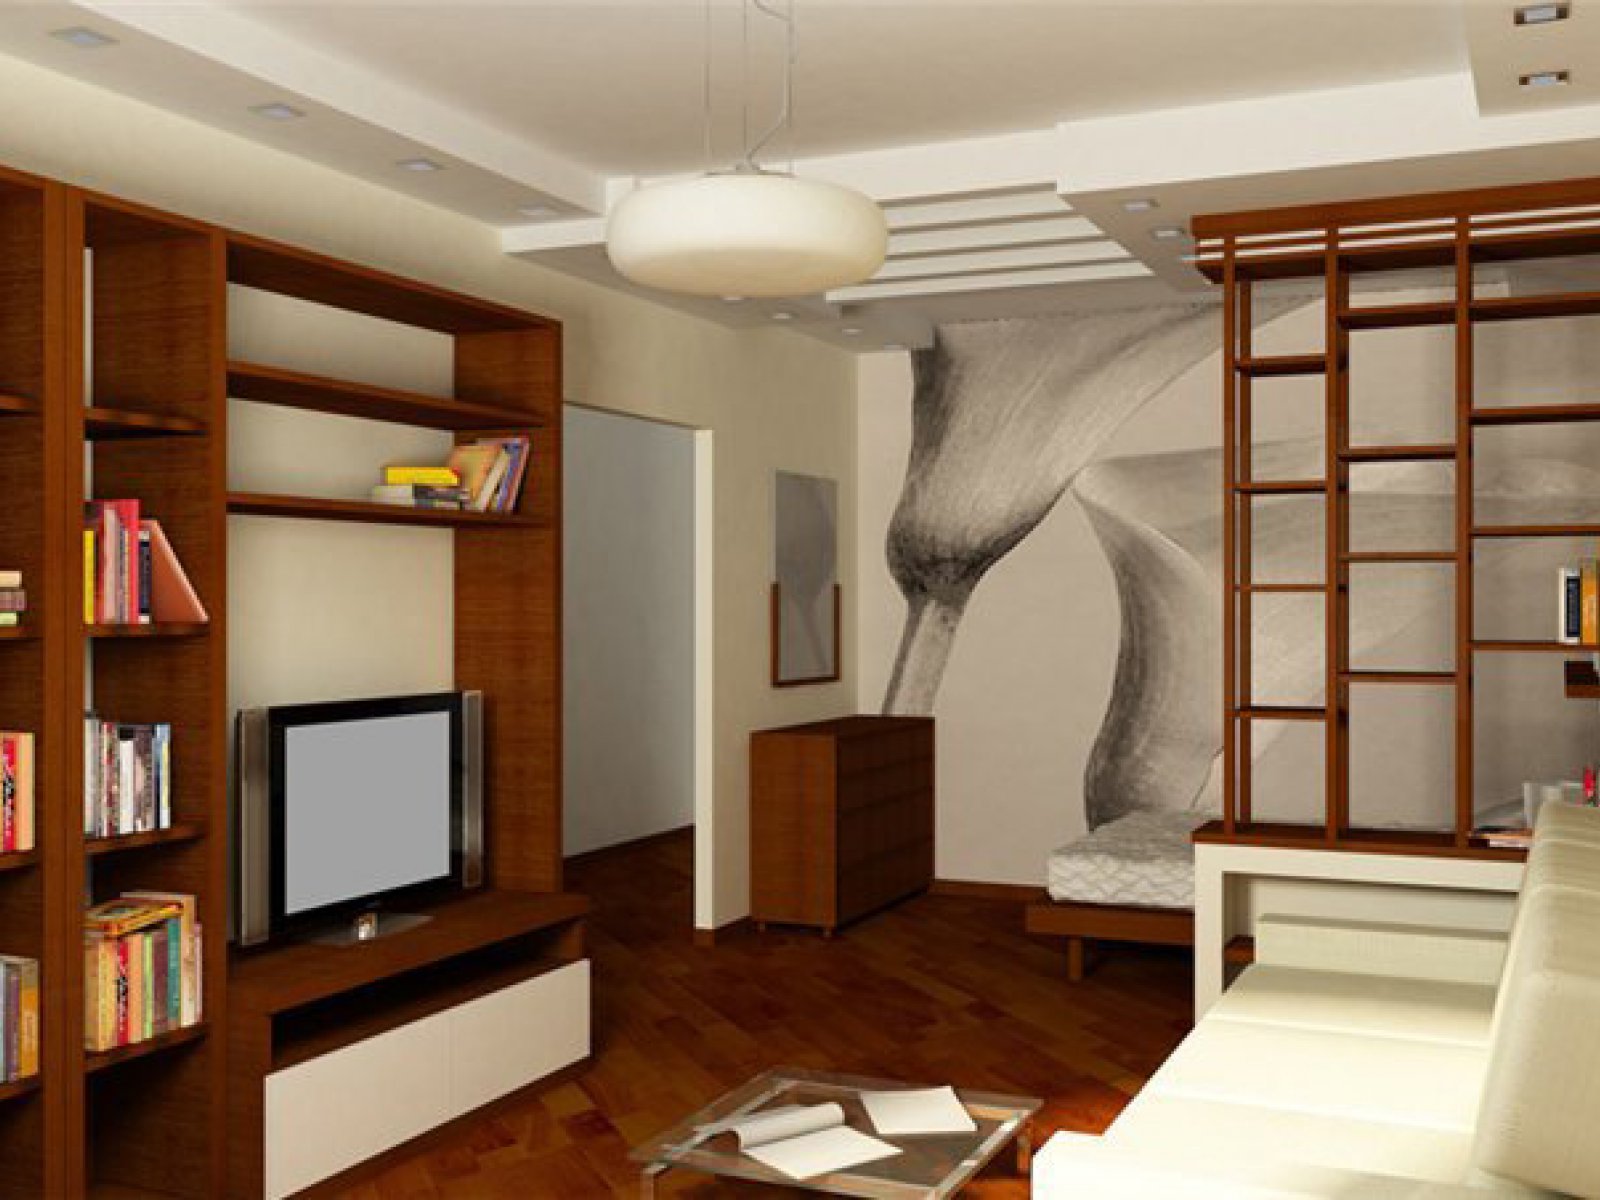 Дизайн интерьера двухкомнатной квартиры п44т